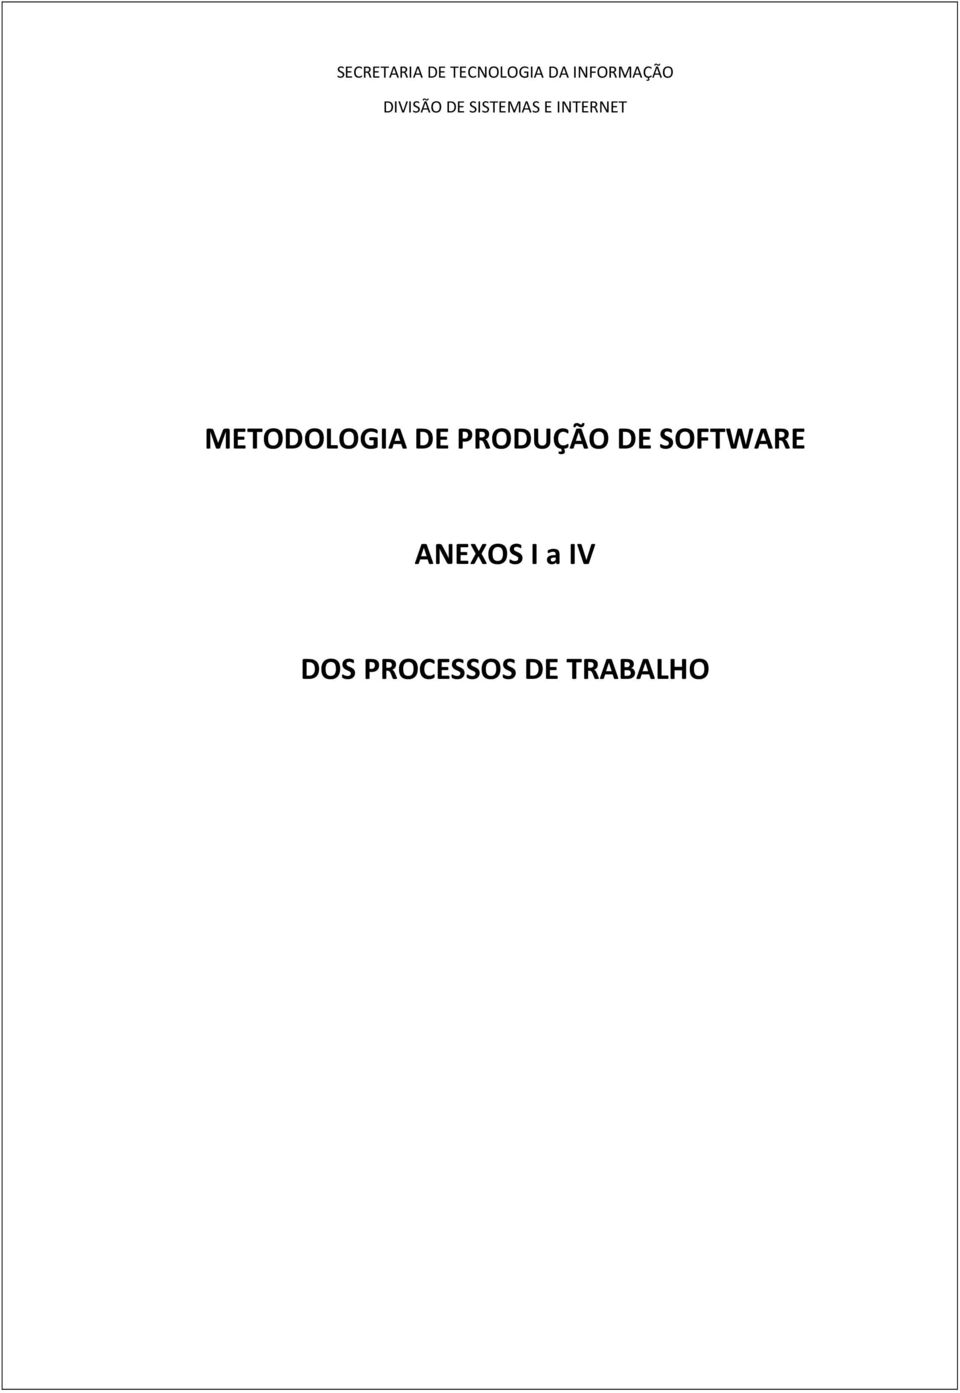 INTERNET METODOLOGIA DE PRODUÇÃO DE